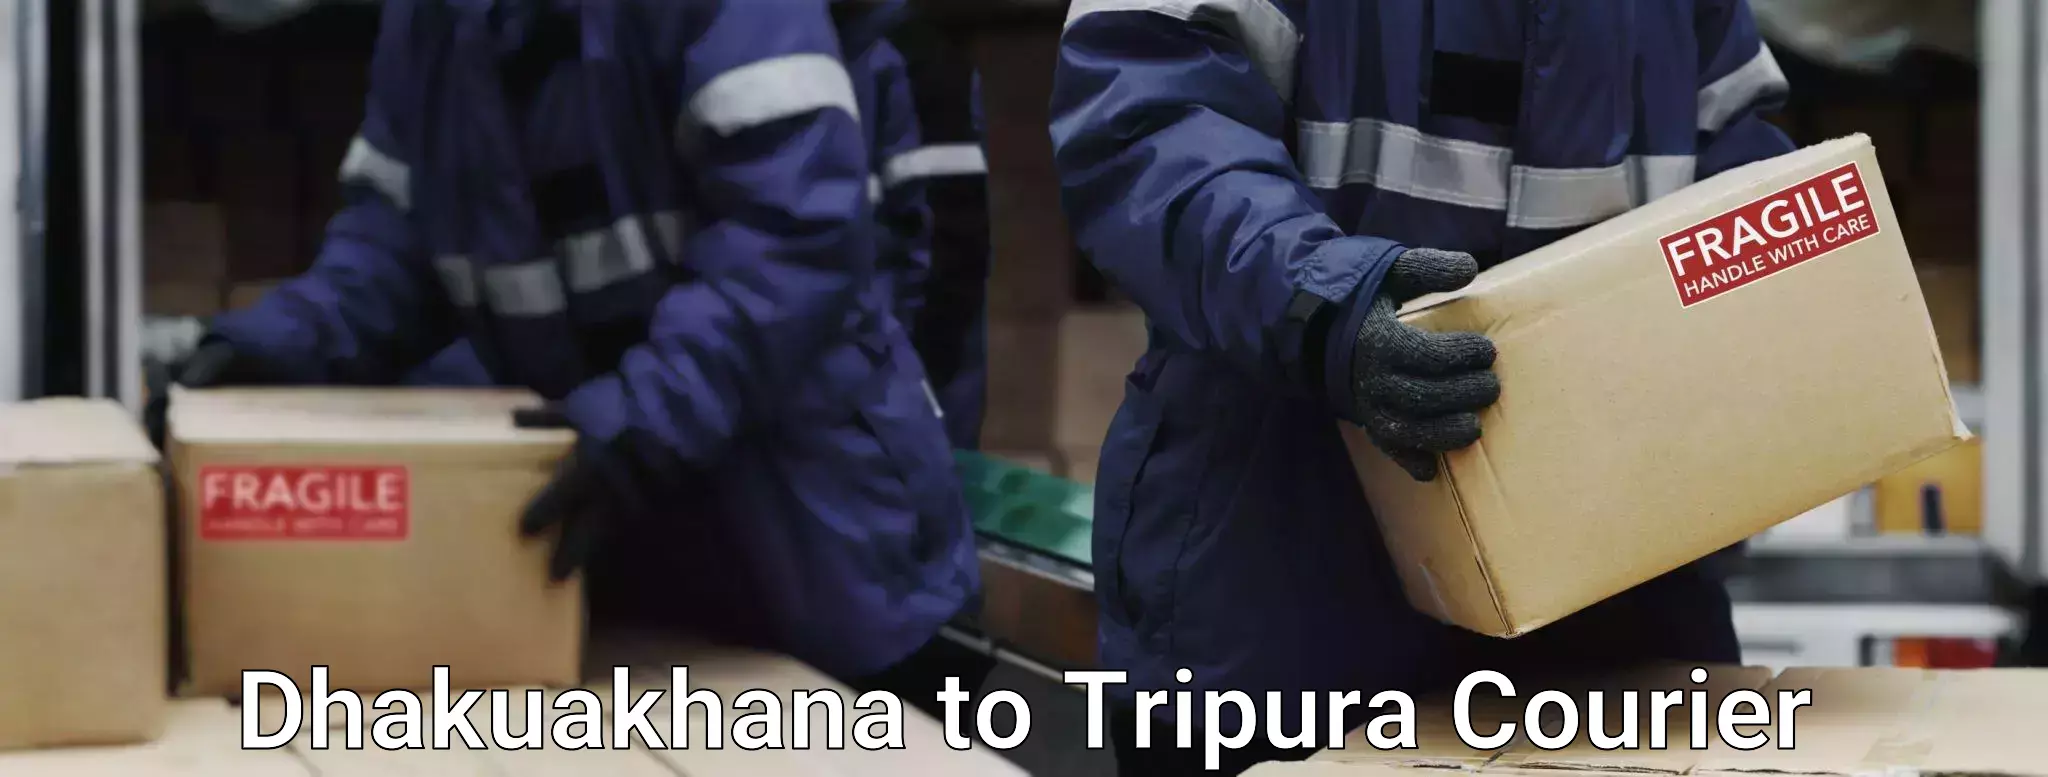 Baggage shipping calculator Dhakuakhana to Udaipur Tripura